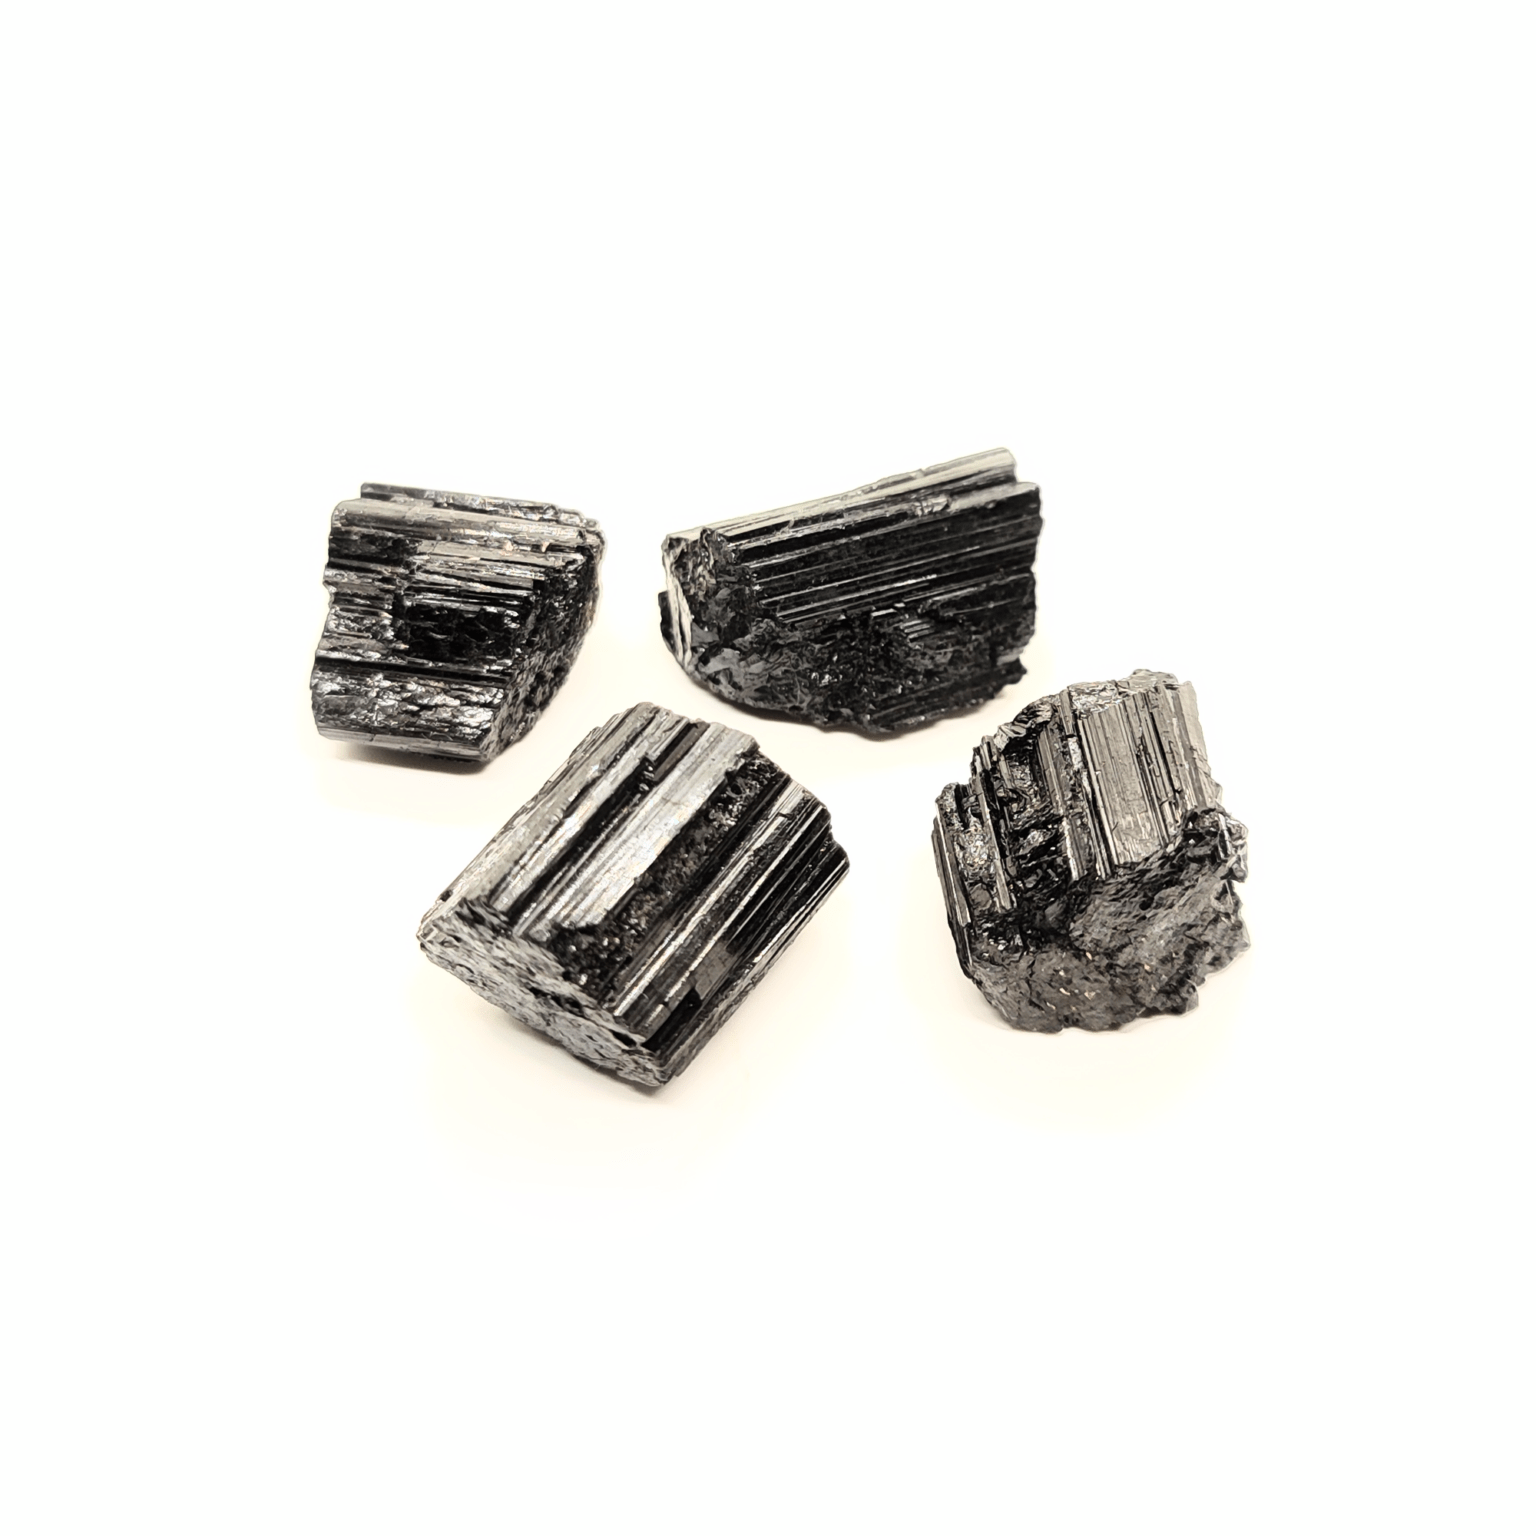 Schwarze Turmalin Rohsteine, welche auch als Schörl bezeichnet werden. Diese Steine sind länglich, rein schwarz & zeigen die typische Turmalin Kristallform auf.